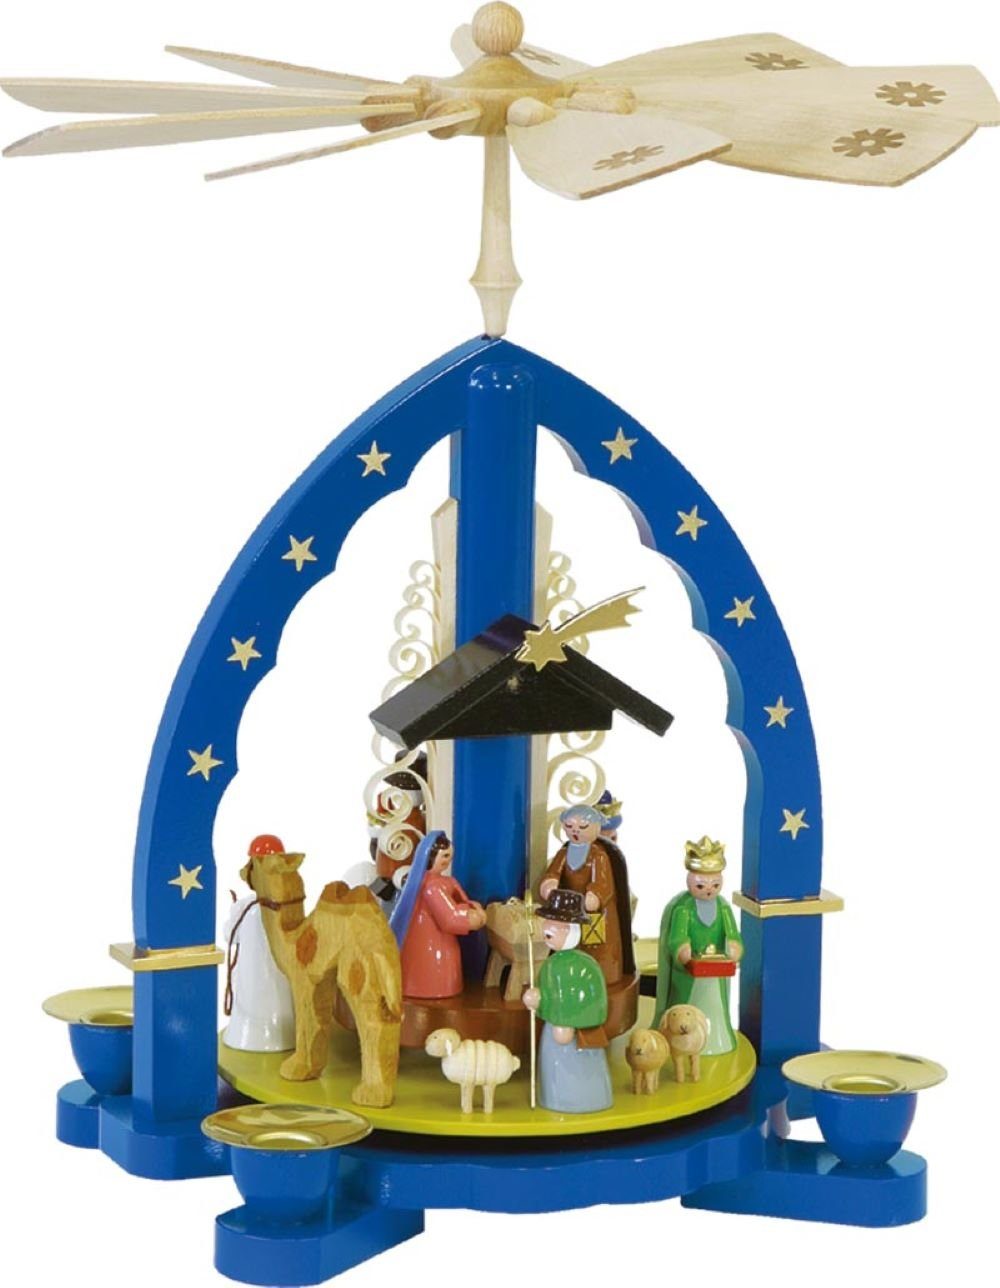 Richard Glaesser Weihnachtspyramide Christi Geburt mit Heiligen Drei Königen blau, Höhe 27cm, Handwerkskunst original Erzgebirge